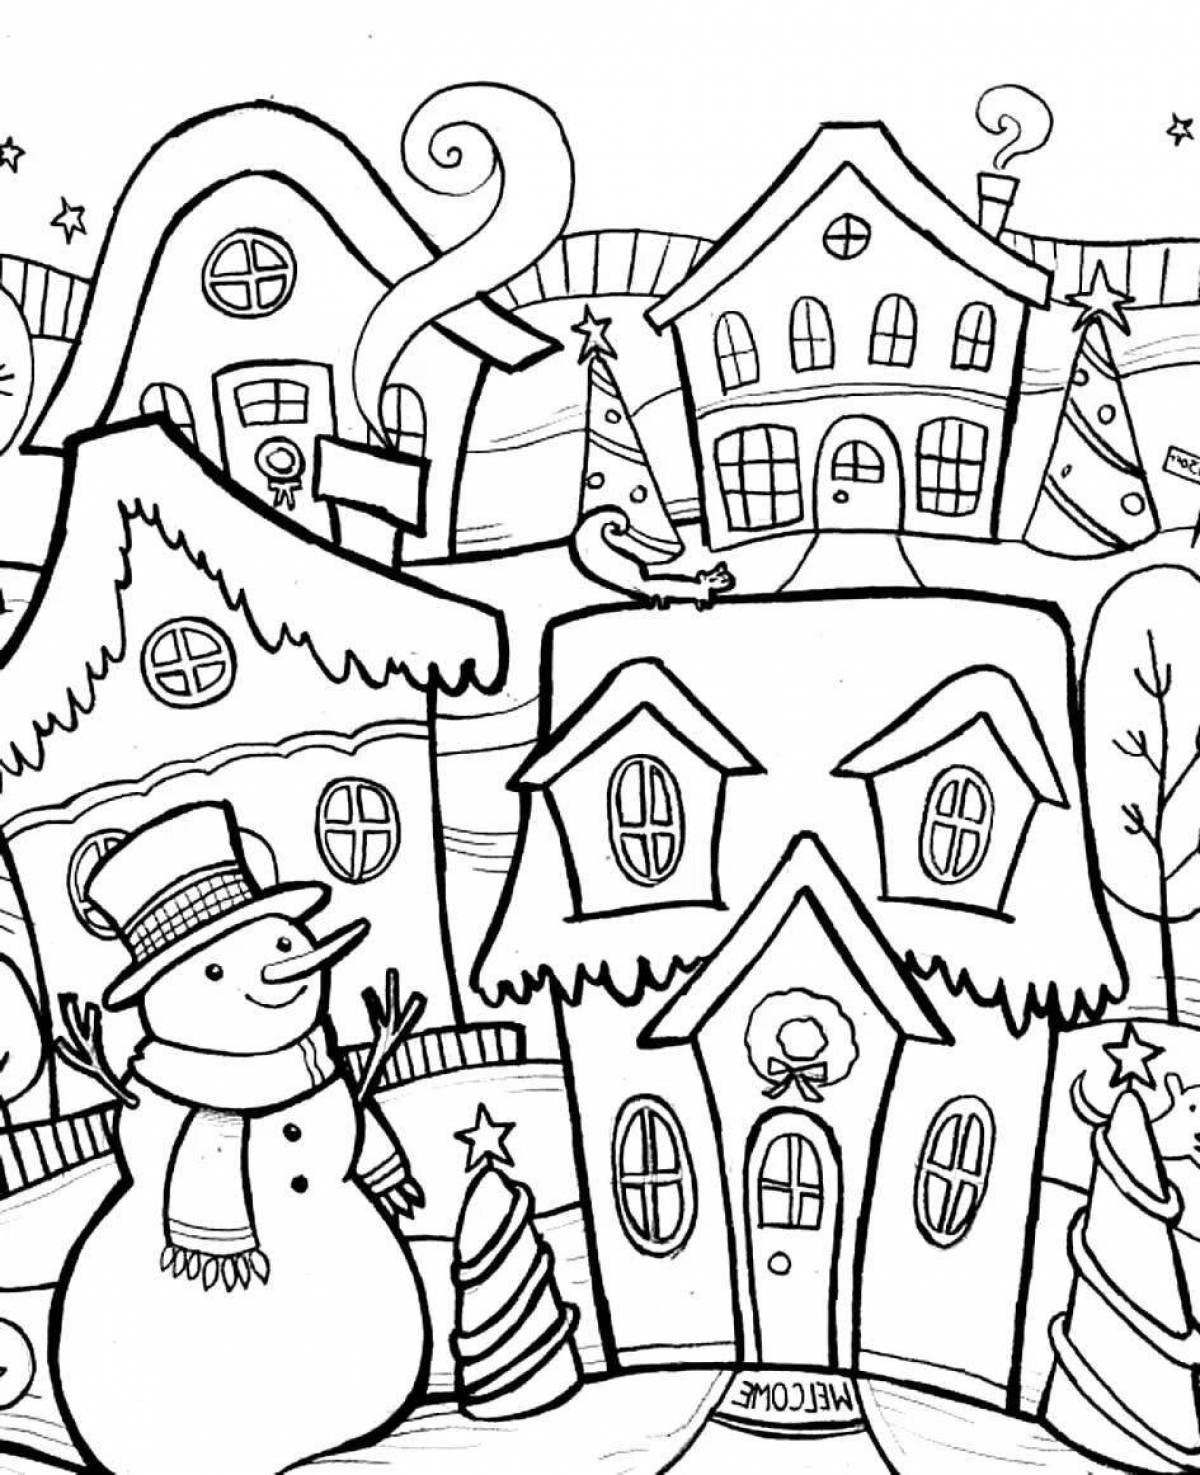 Coloring page cozy winter village